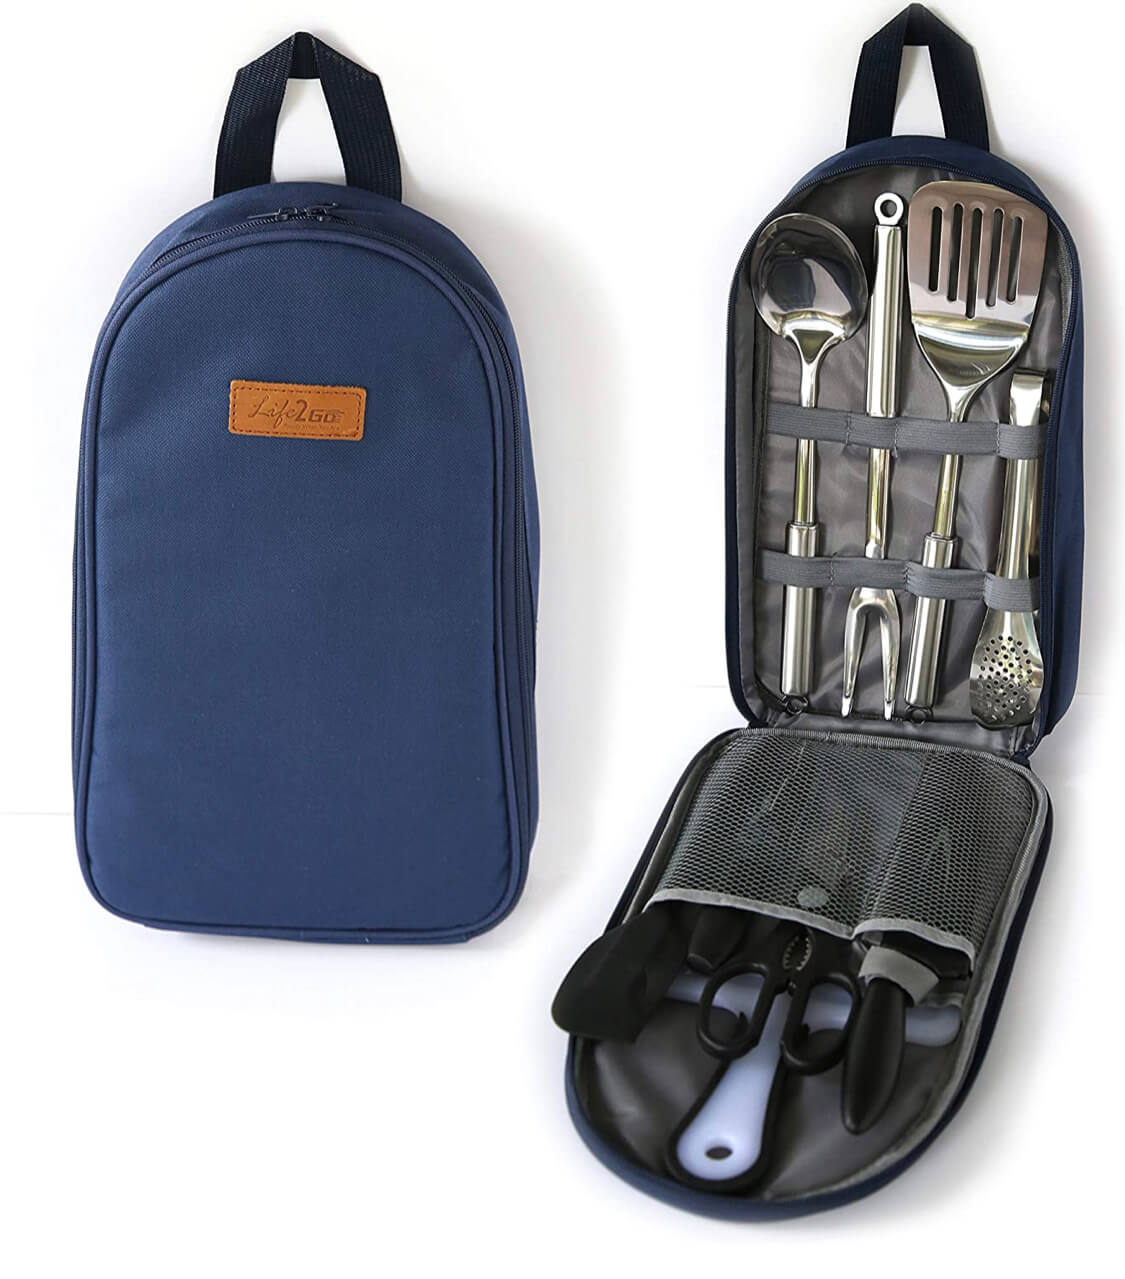 grill utensil travel pack for the beach